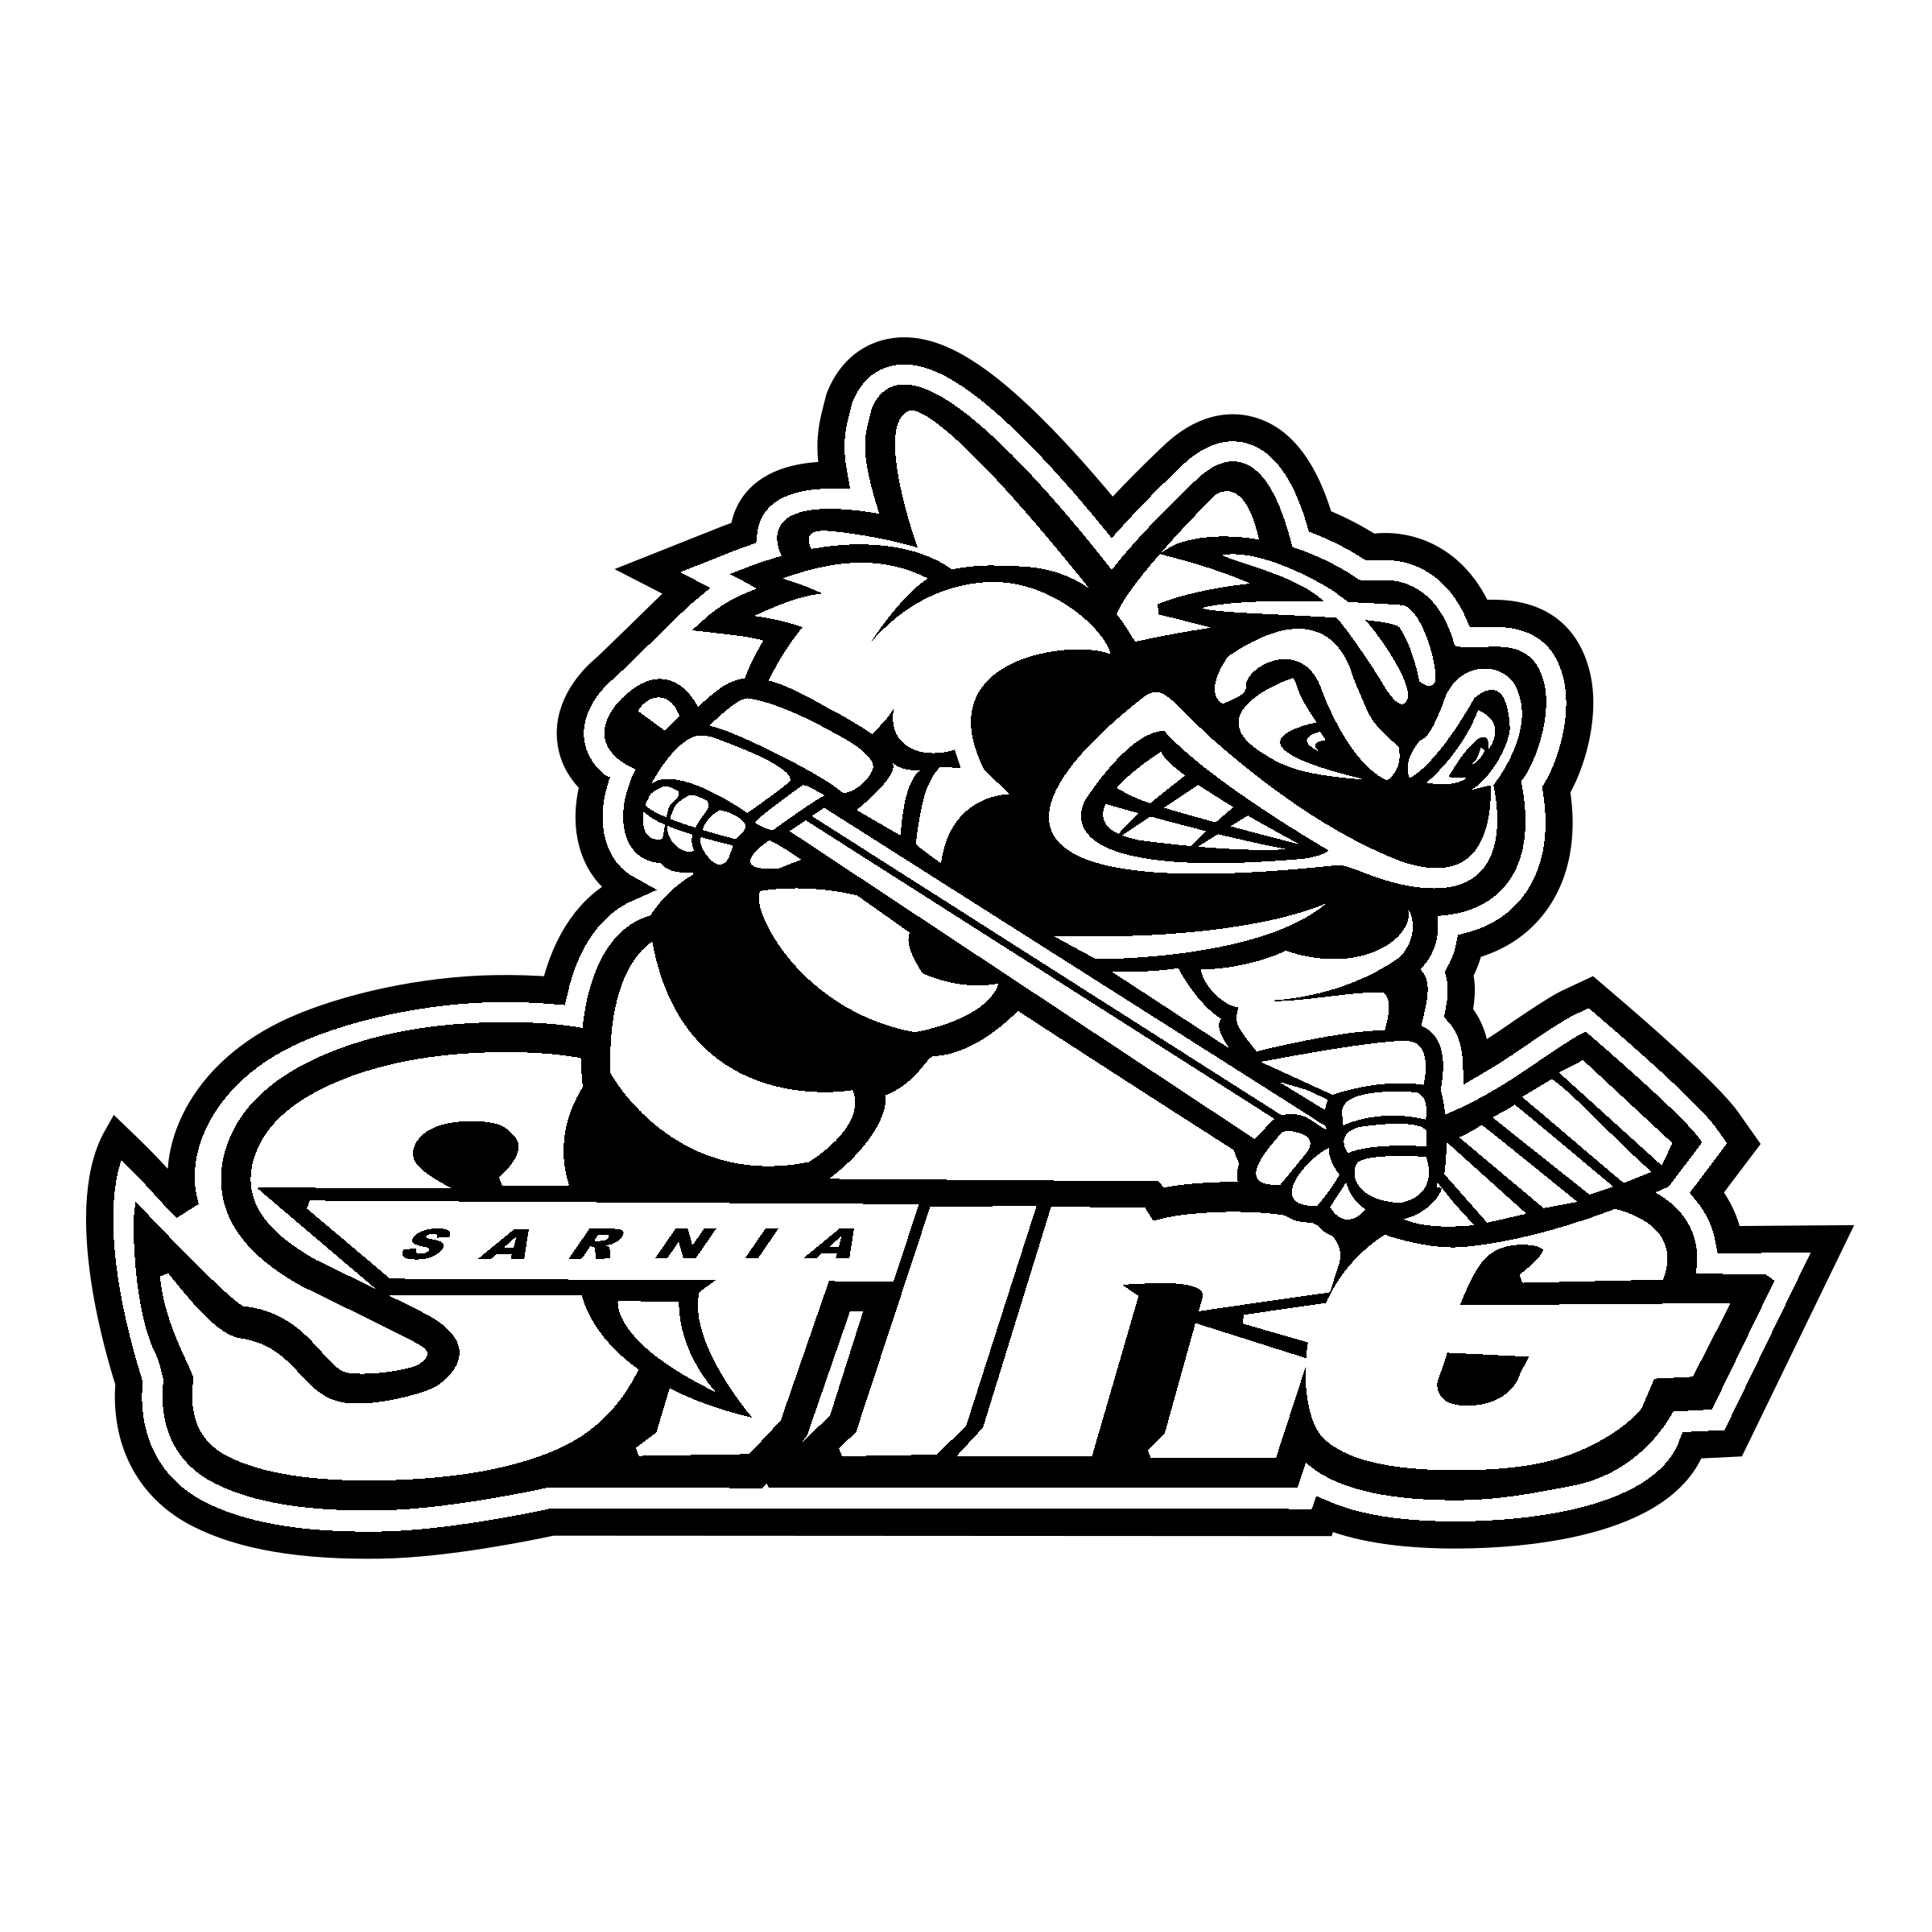 Sarnia Sting Logo PNG Transparent & SVG Vector.